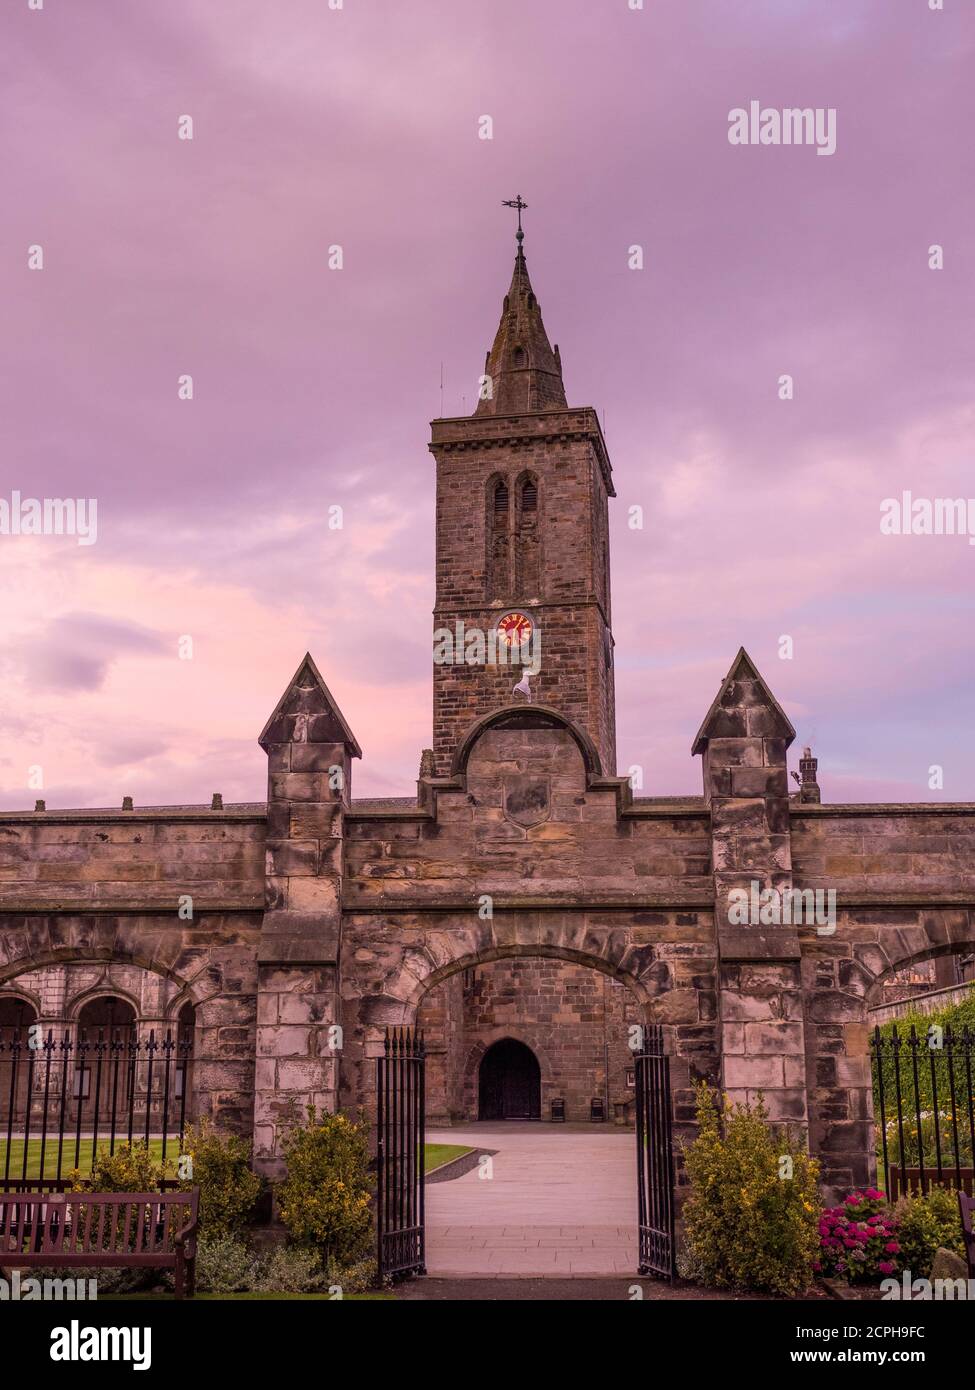 Nuit St Salvators Chapel Spire, St Salvators Chapel, Université de St Andrews, St Andrews, Fife, Écosse, Royaume-Uni, GB. Banque D'Images